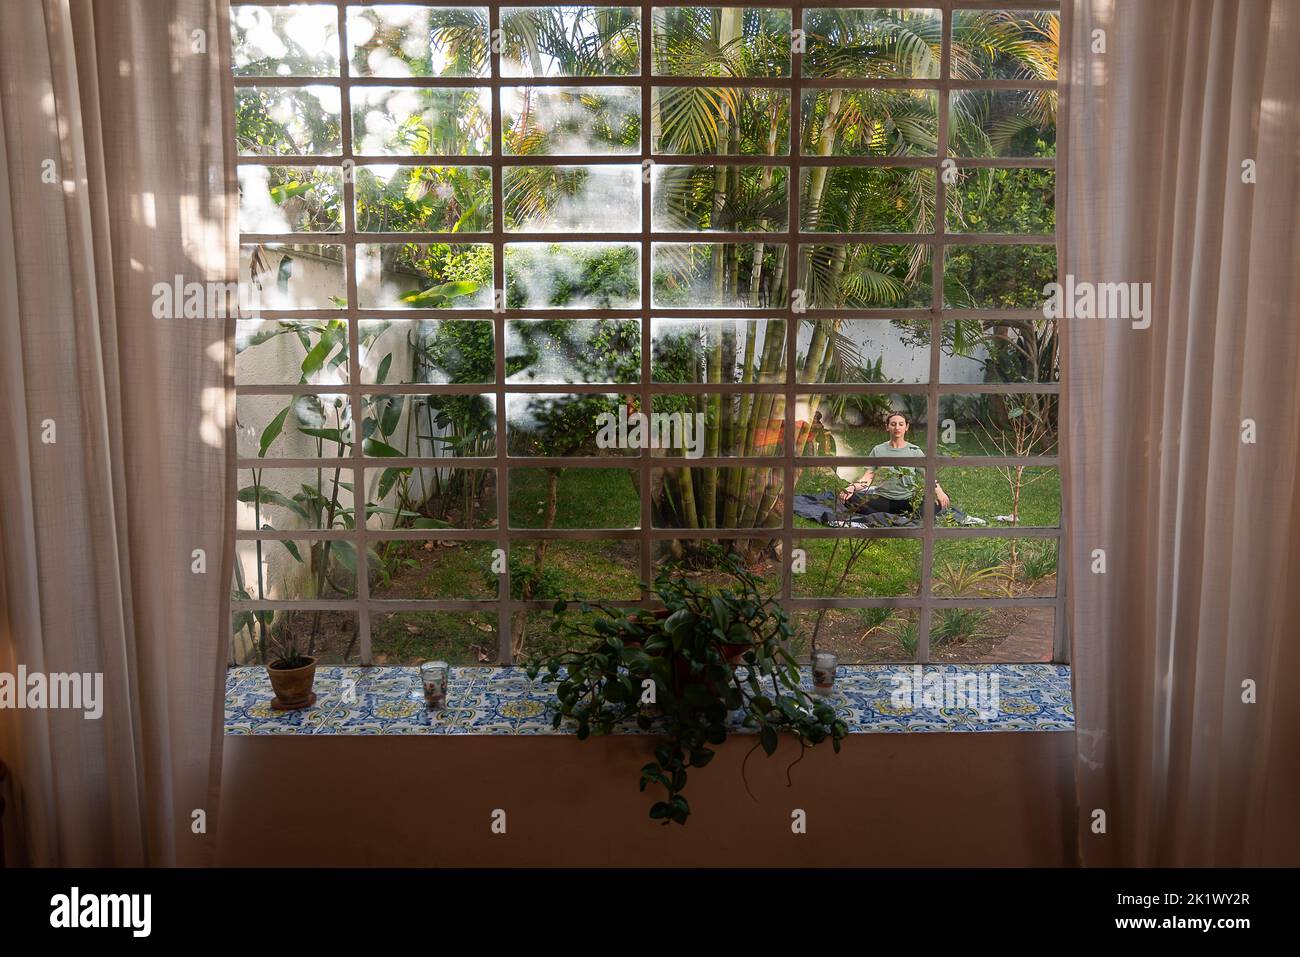 La femme pratique le yoga dans l'arrière-cour entouré de plantes et d'arbres, capturés par la fenêtre de la maison avec des vibes tropicales et des palmiers Banque D'Images